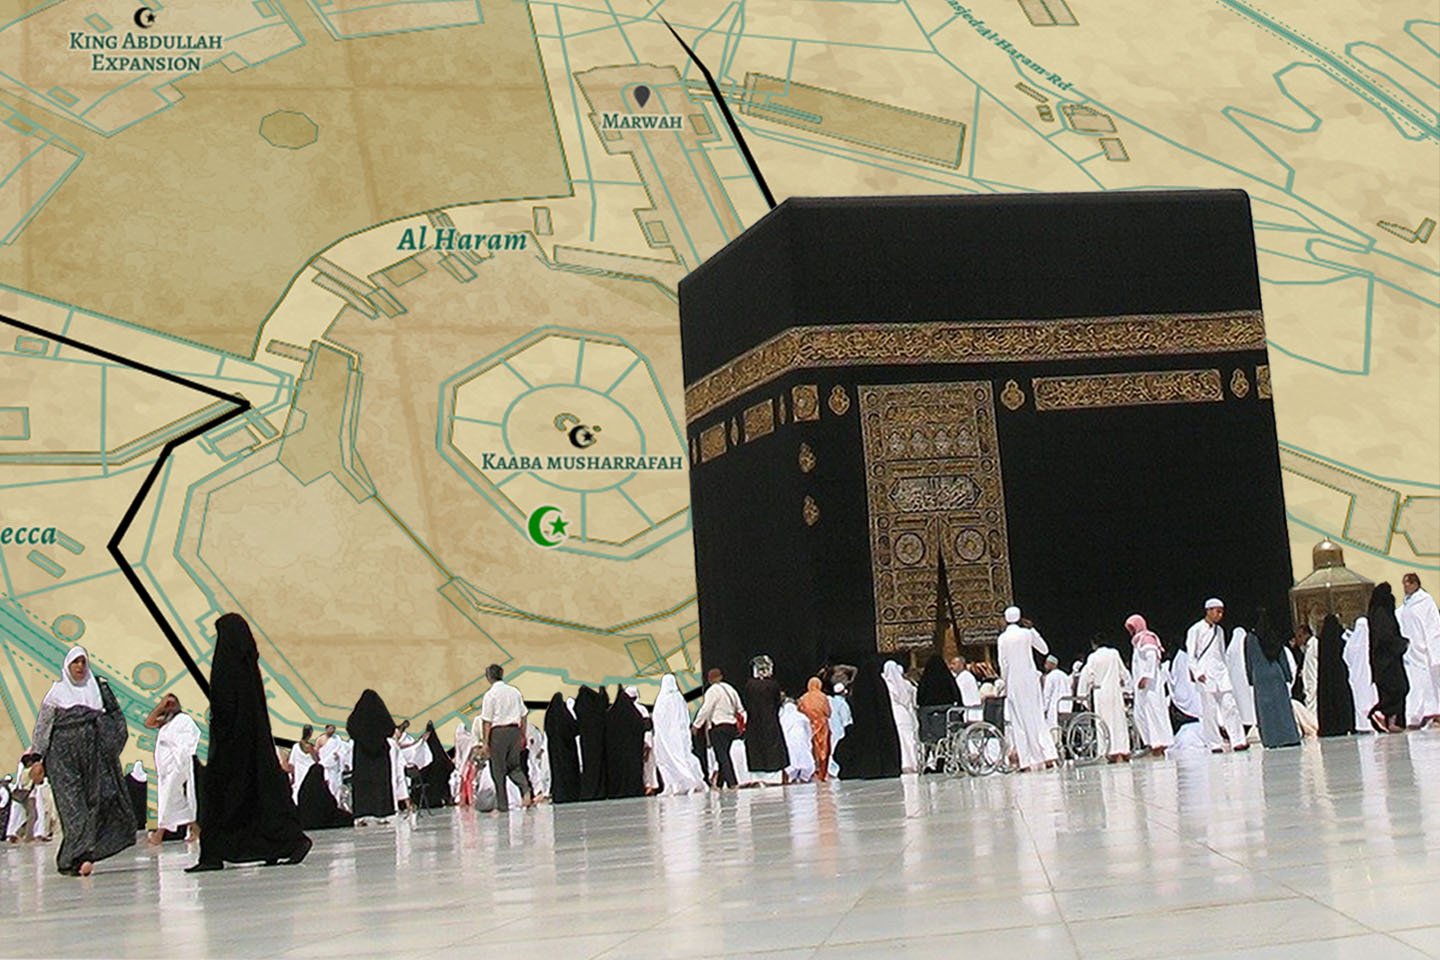 Preparing for the Sacred Journey of Hajj